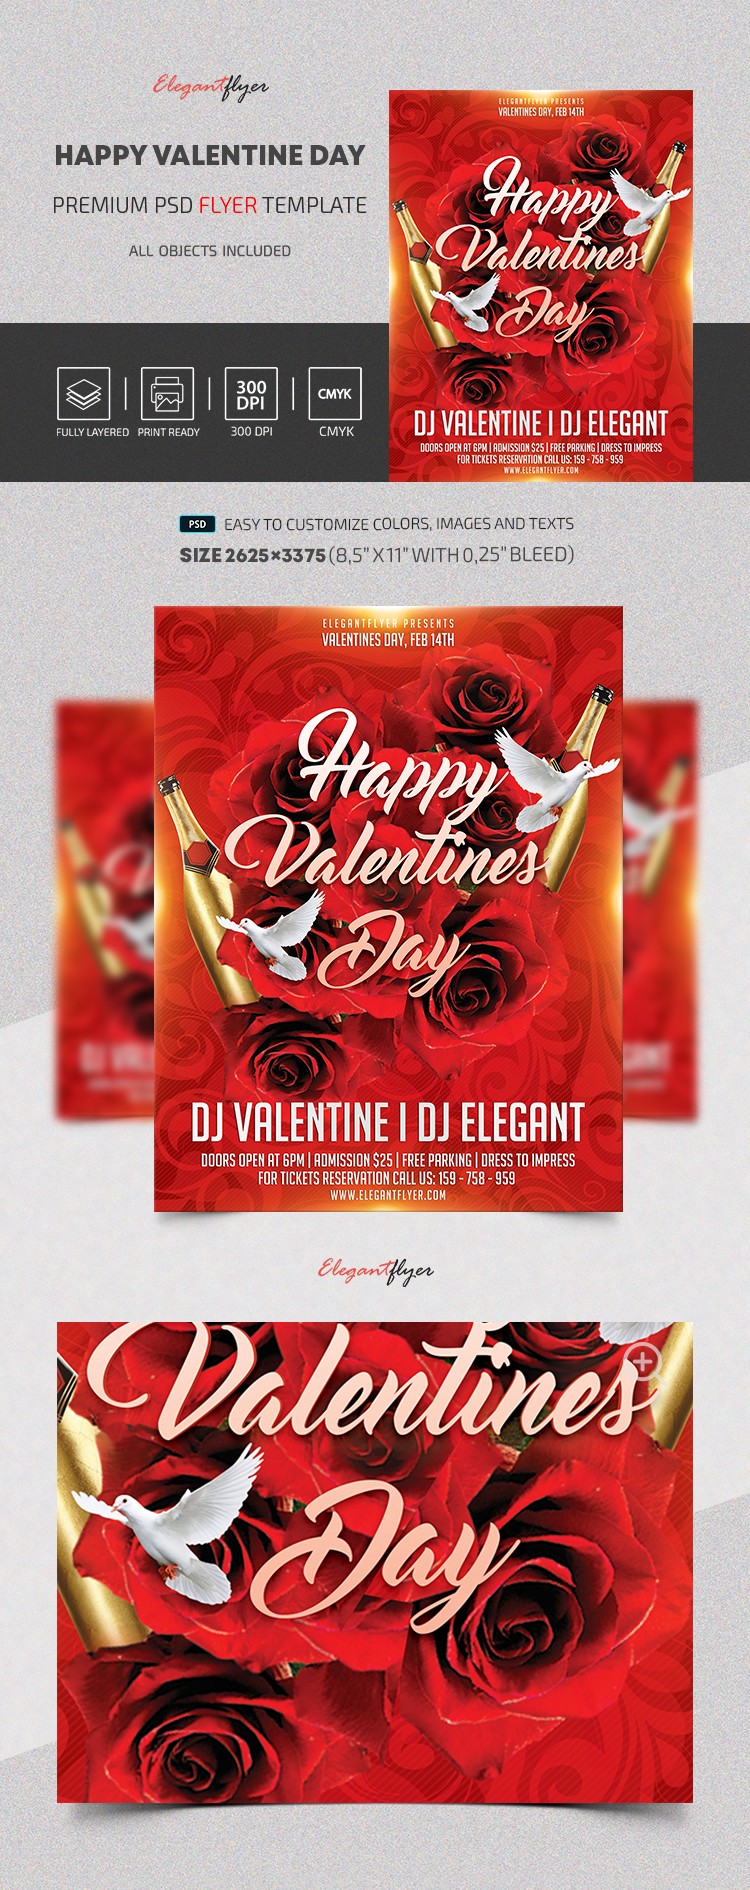 Happy Valentine Day by ElegantFlyer